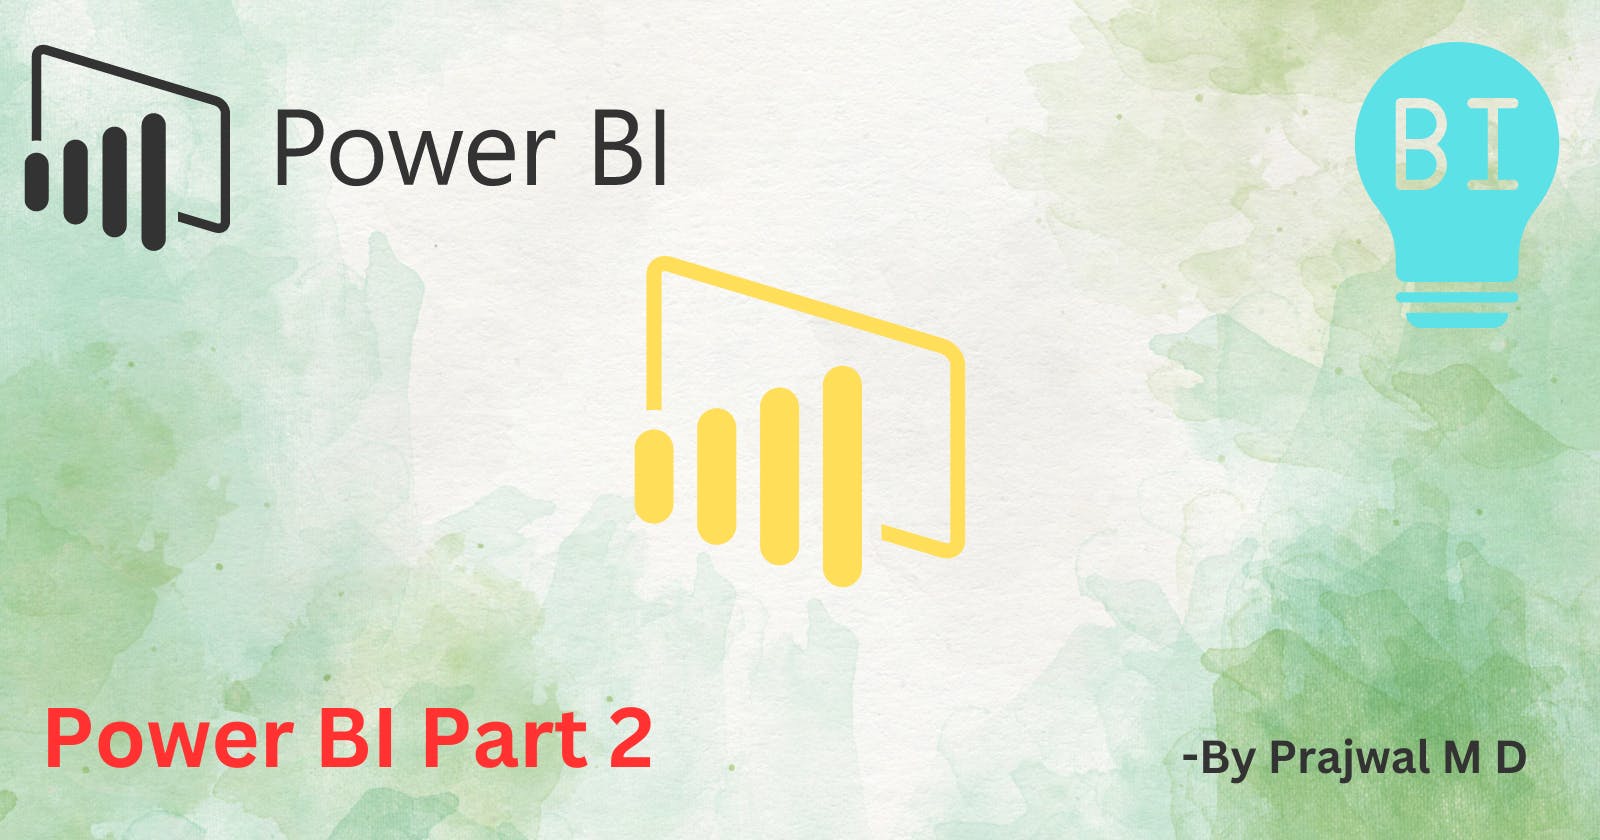 Power BI Series Part 2: Mastering Data Analysis